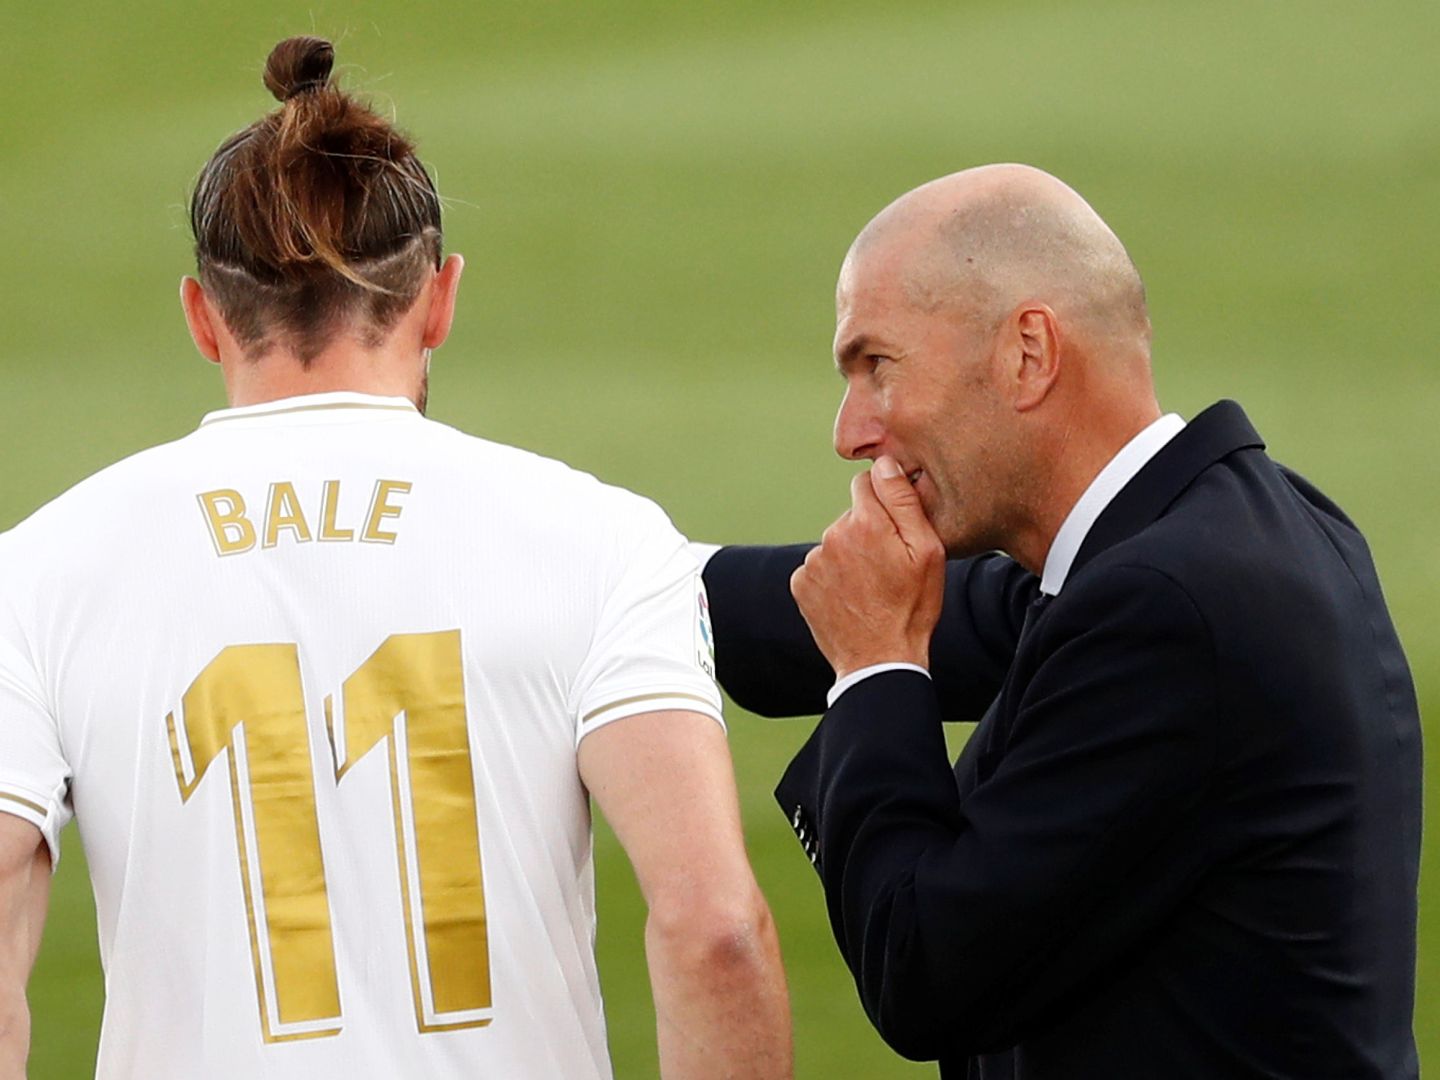 Zidane da instrucciones a Bale antes de salir a jugar contra el Eibar. (Efe)